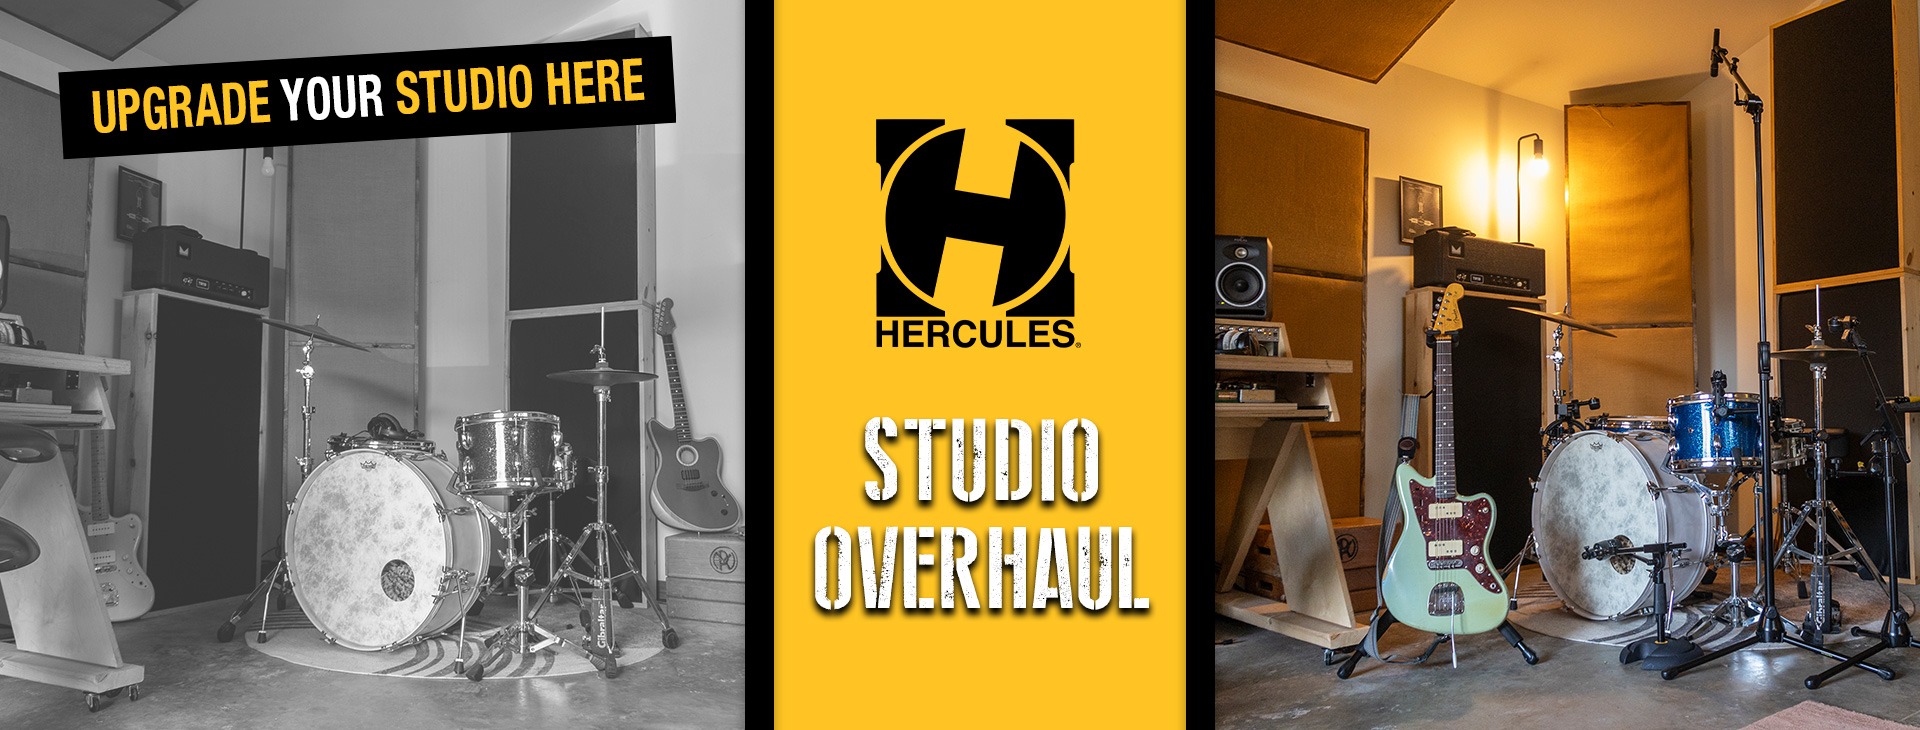 Hercules Studio Overhaul Banner